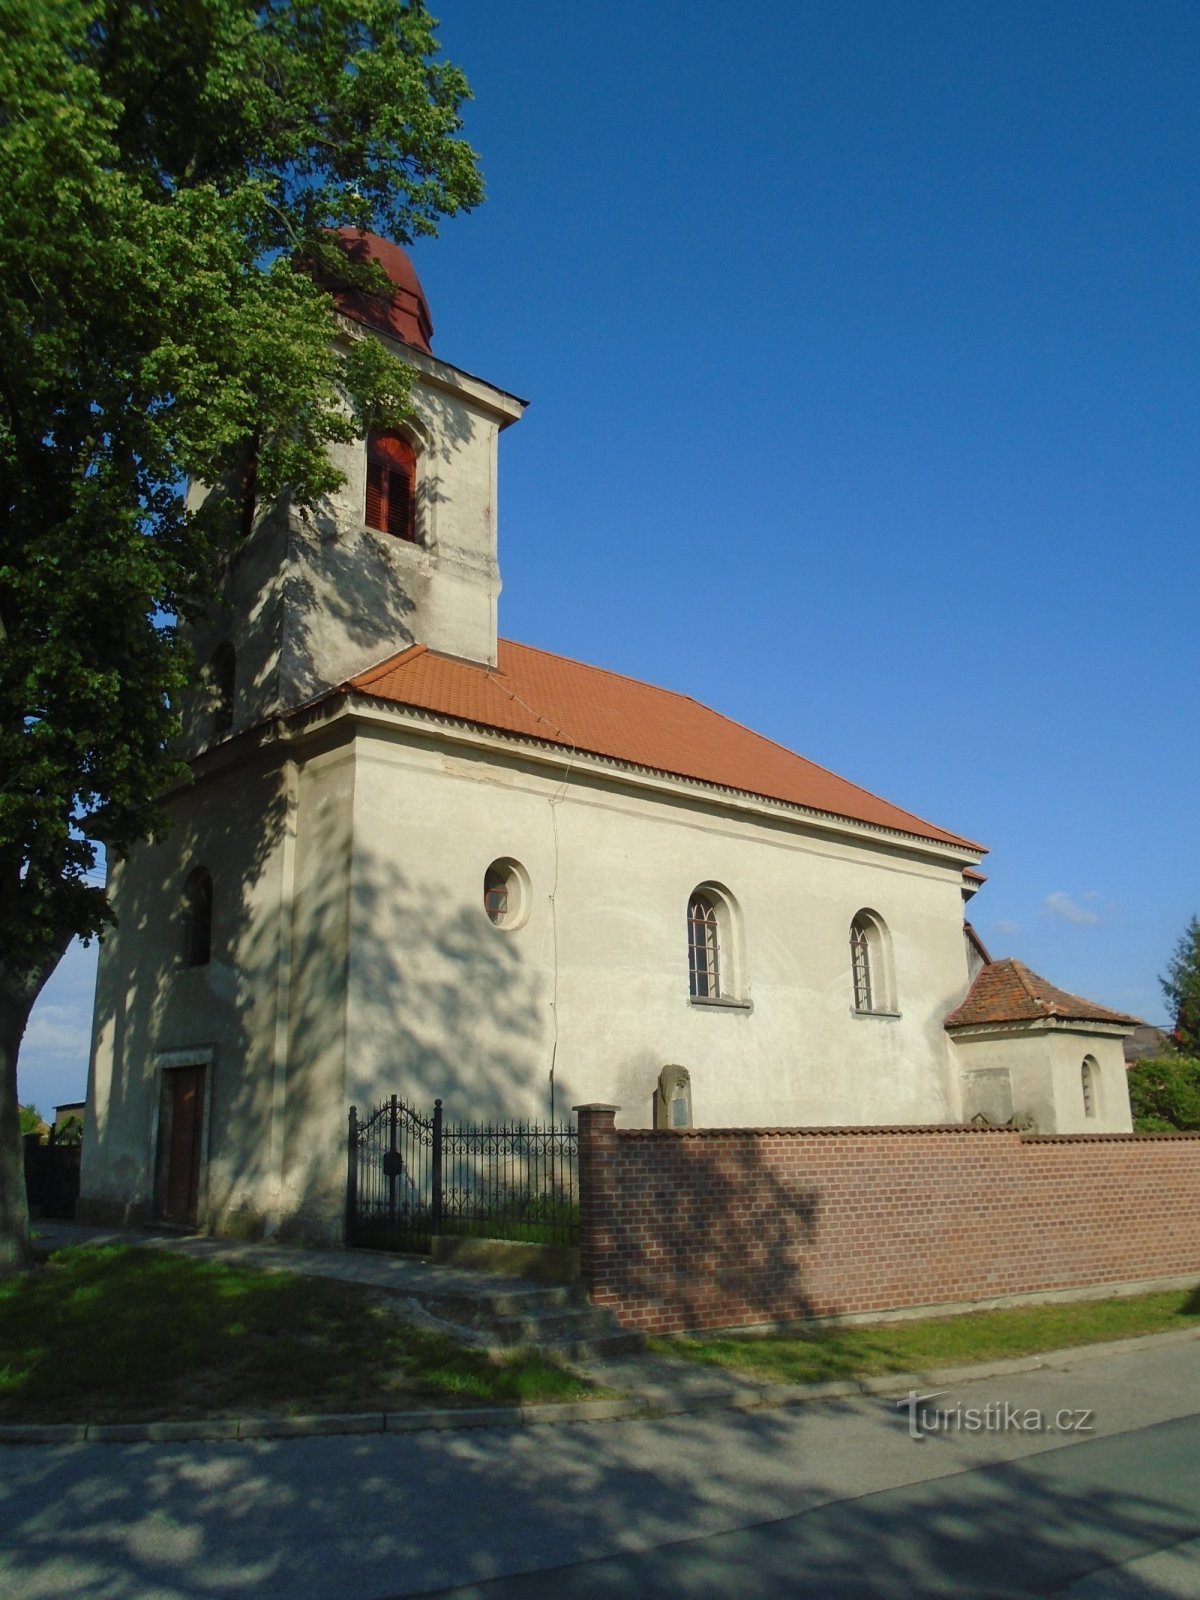 Chiesa della Santissima Trinità (Praskačka, 21.5.2019/XNUMX/XNUMX)